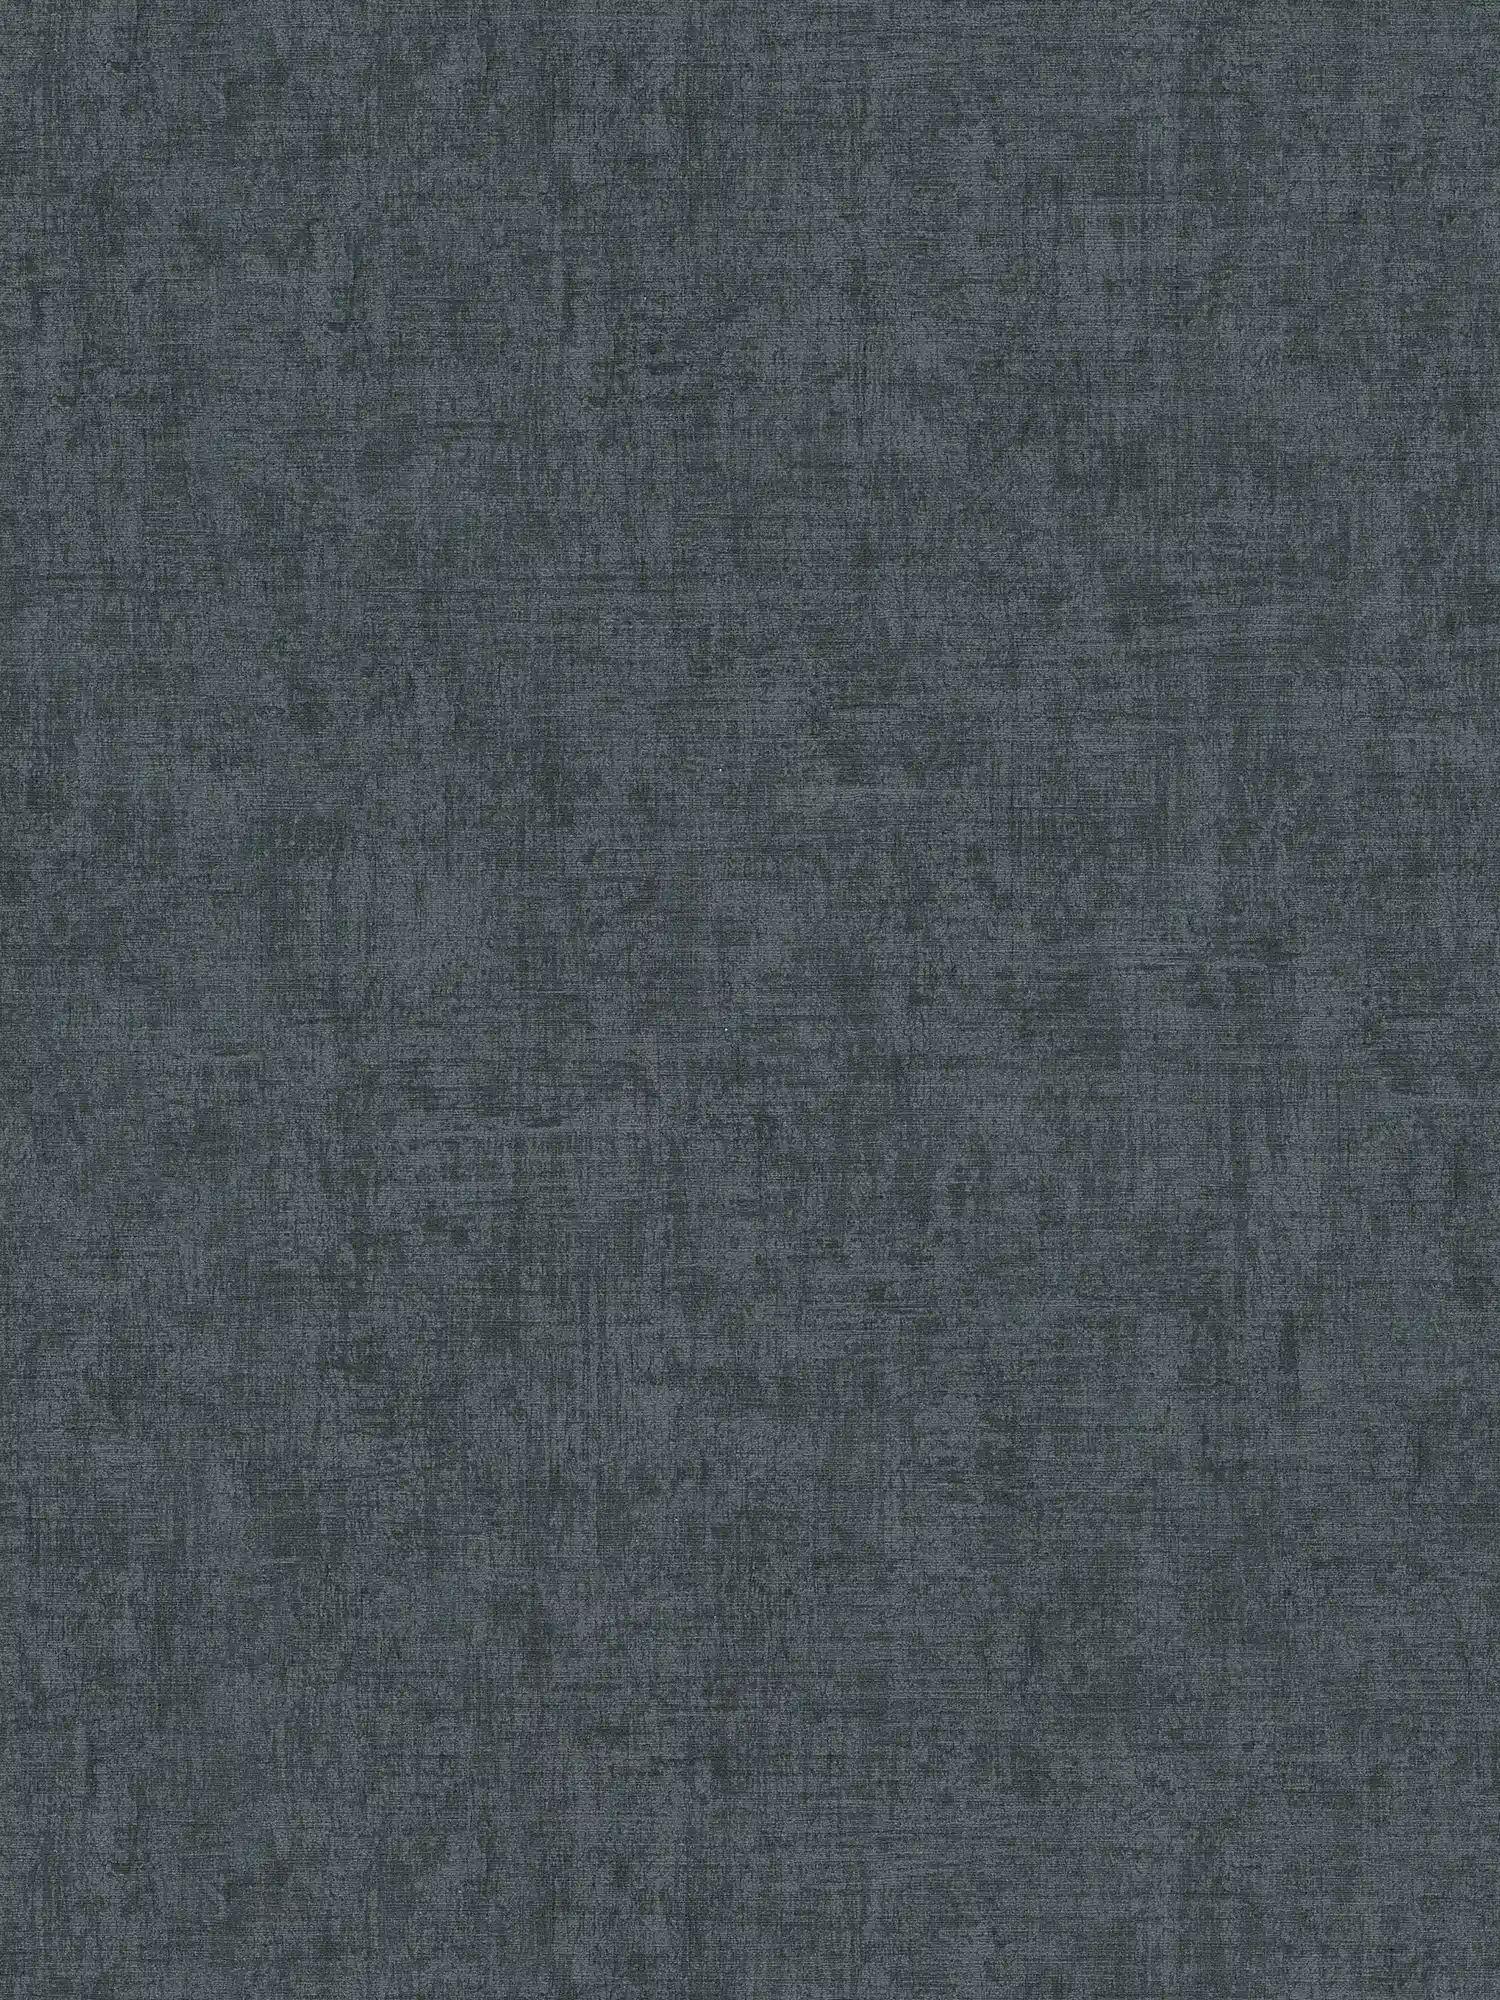 Dunkle Tapete mit Farb- und Strukturmuster – Grau, Schwarz
